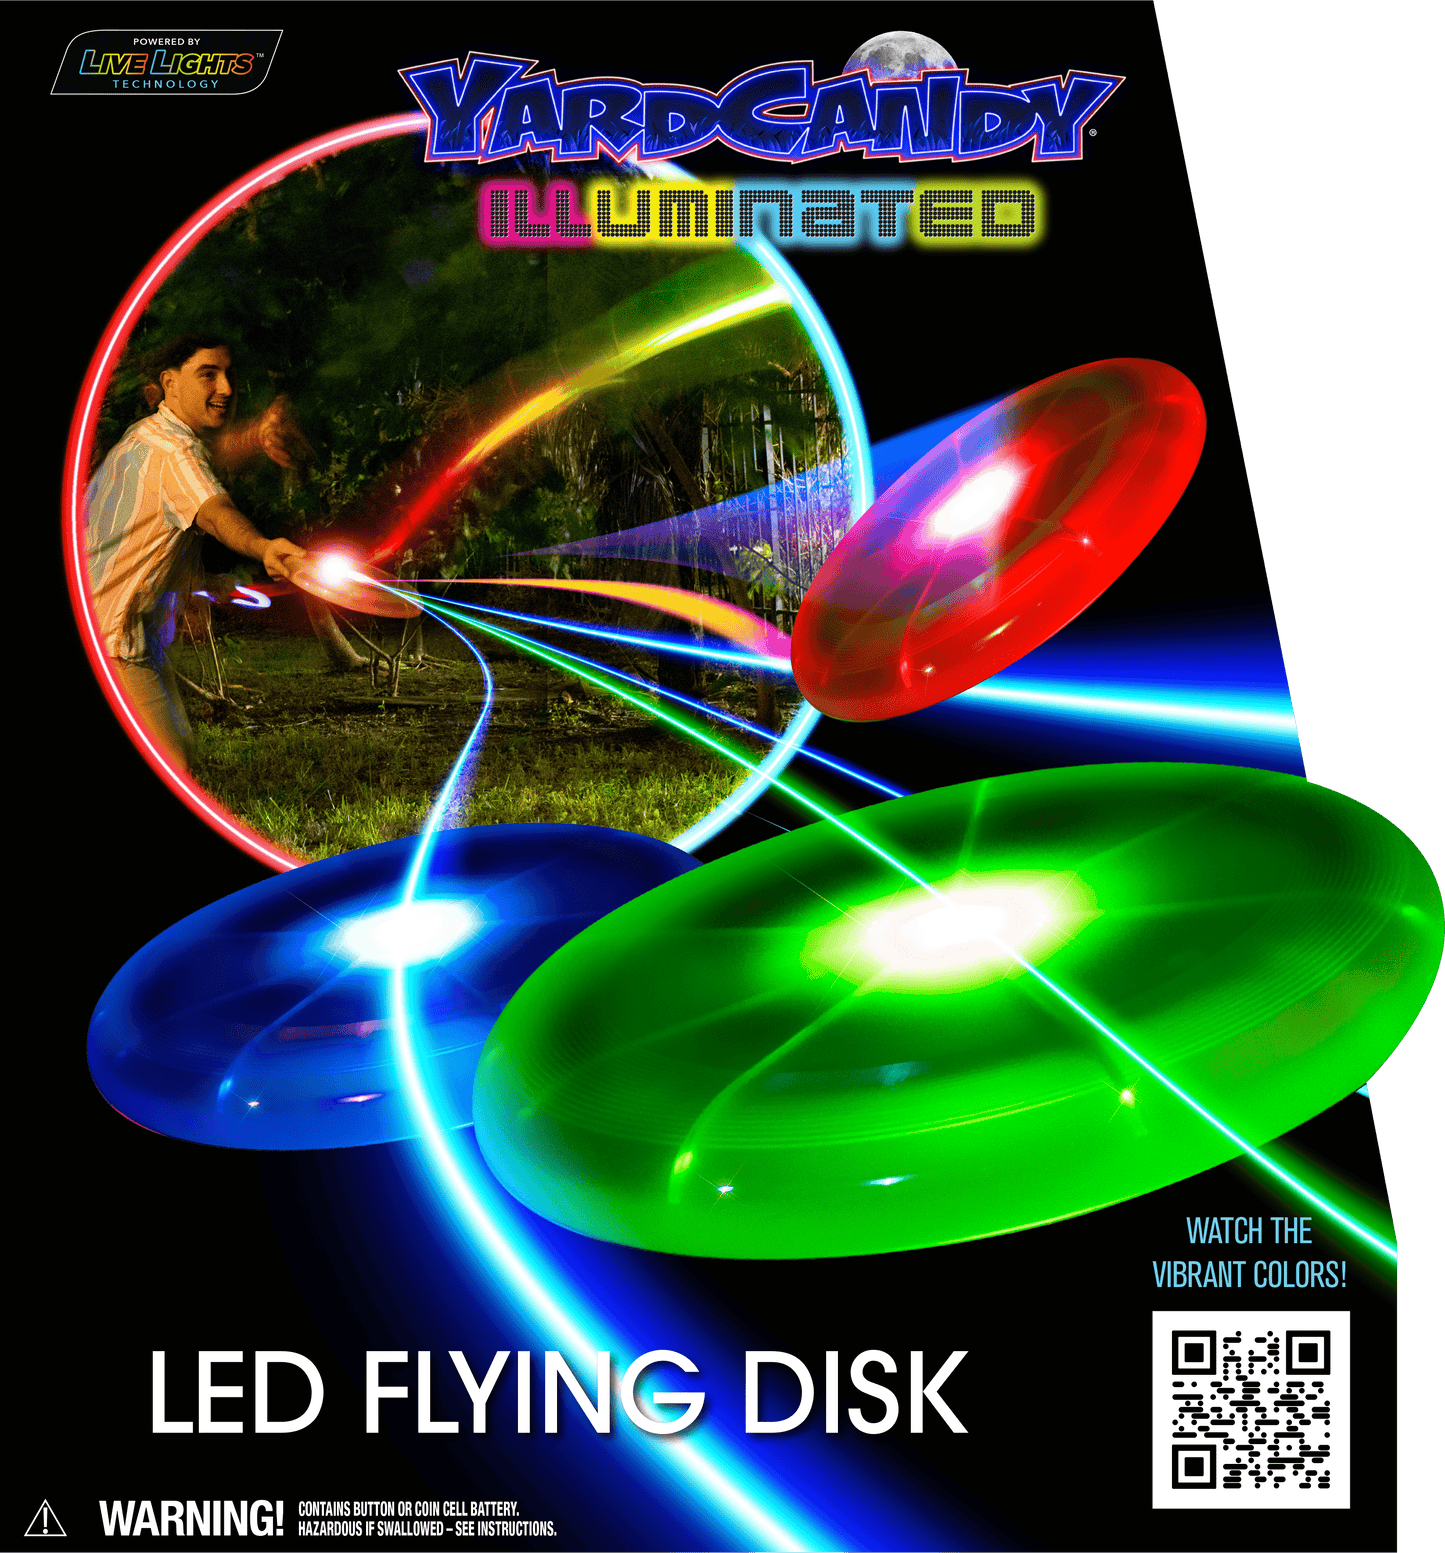 Flying Disk Illuminated LED YardCandy